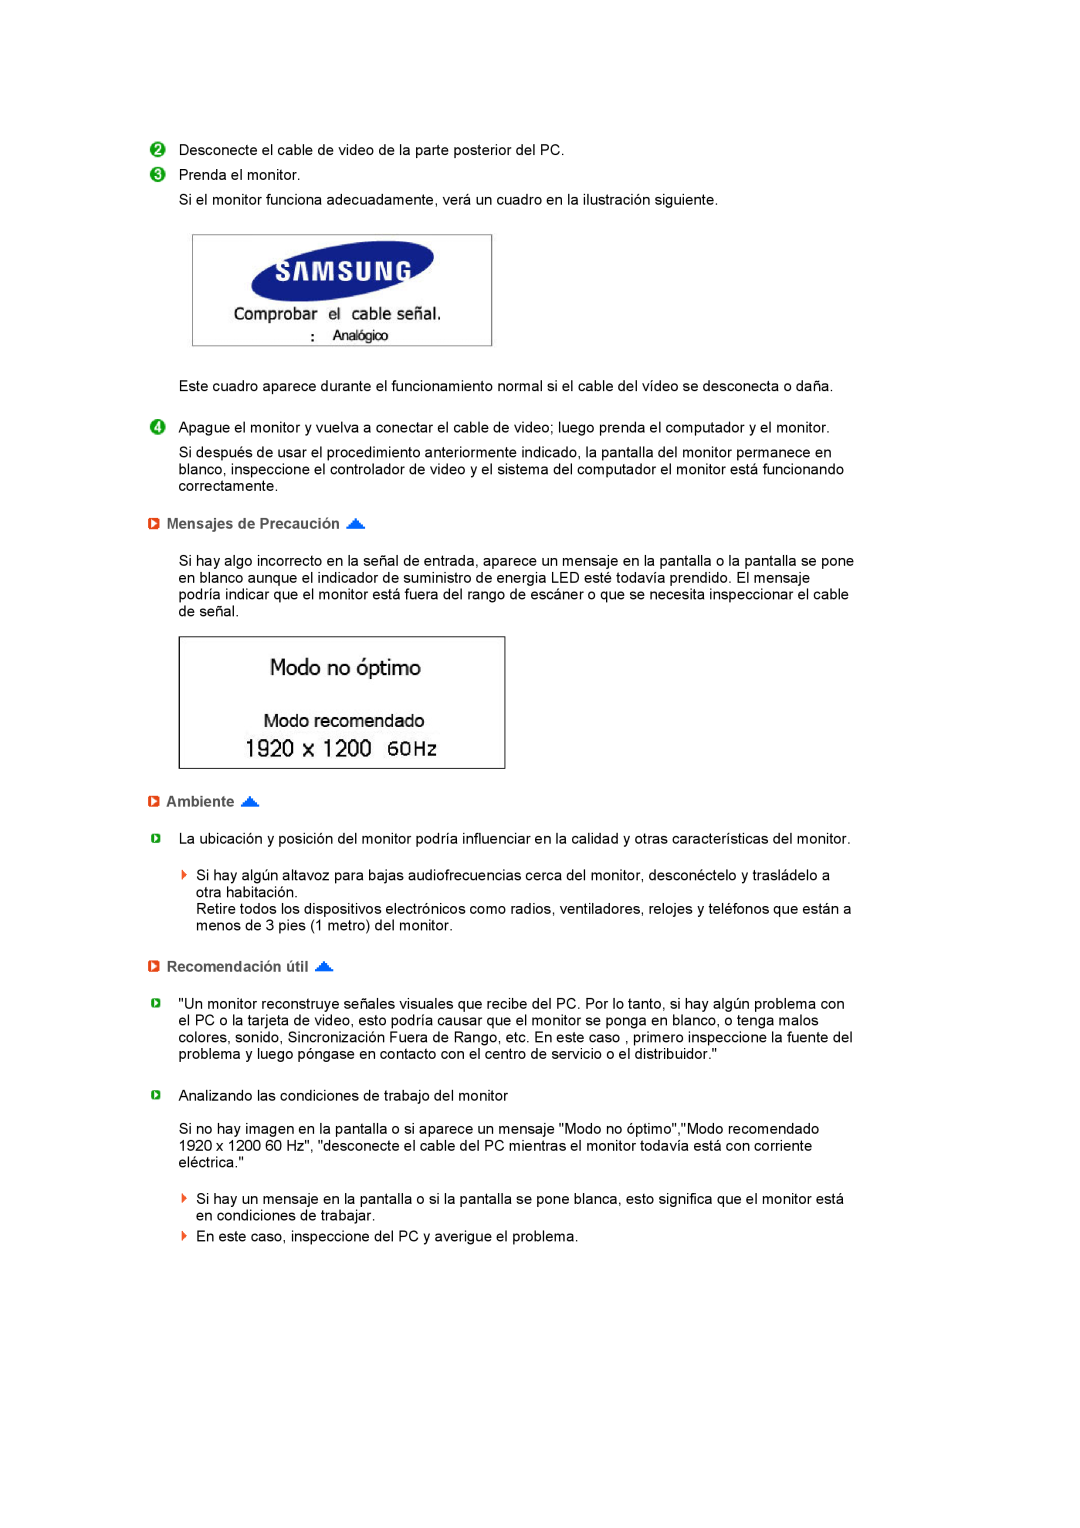 Samsung 275TPLUS quick start Mensajes de Precaución, Ambiente, Recomendación útil 